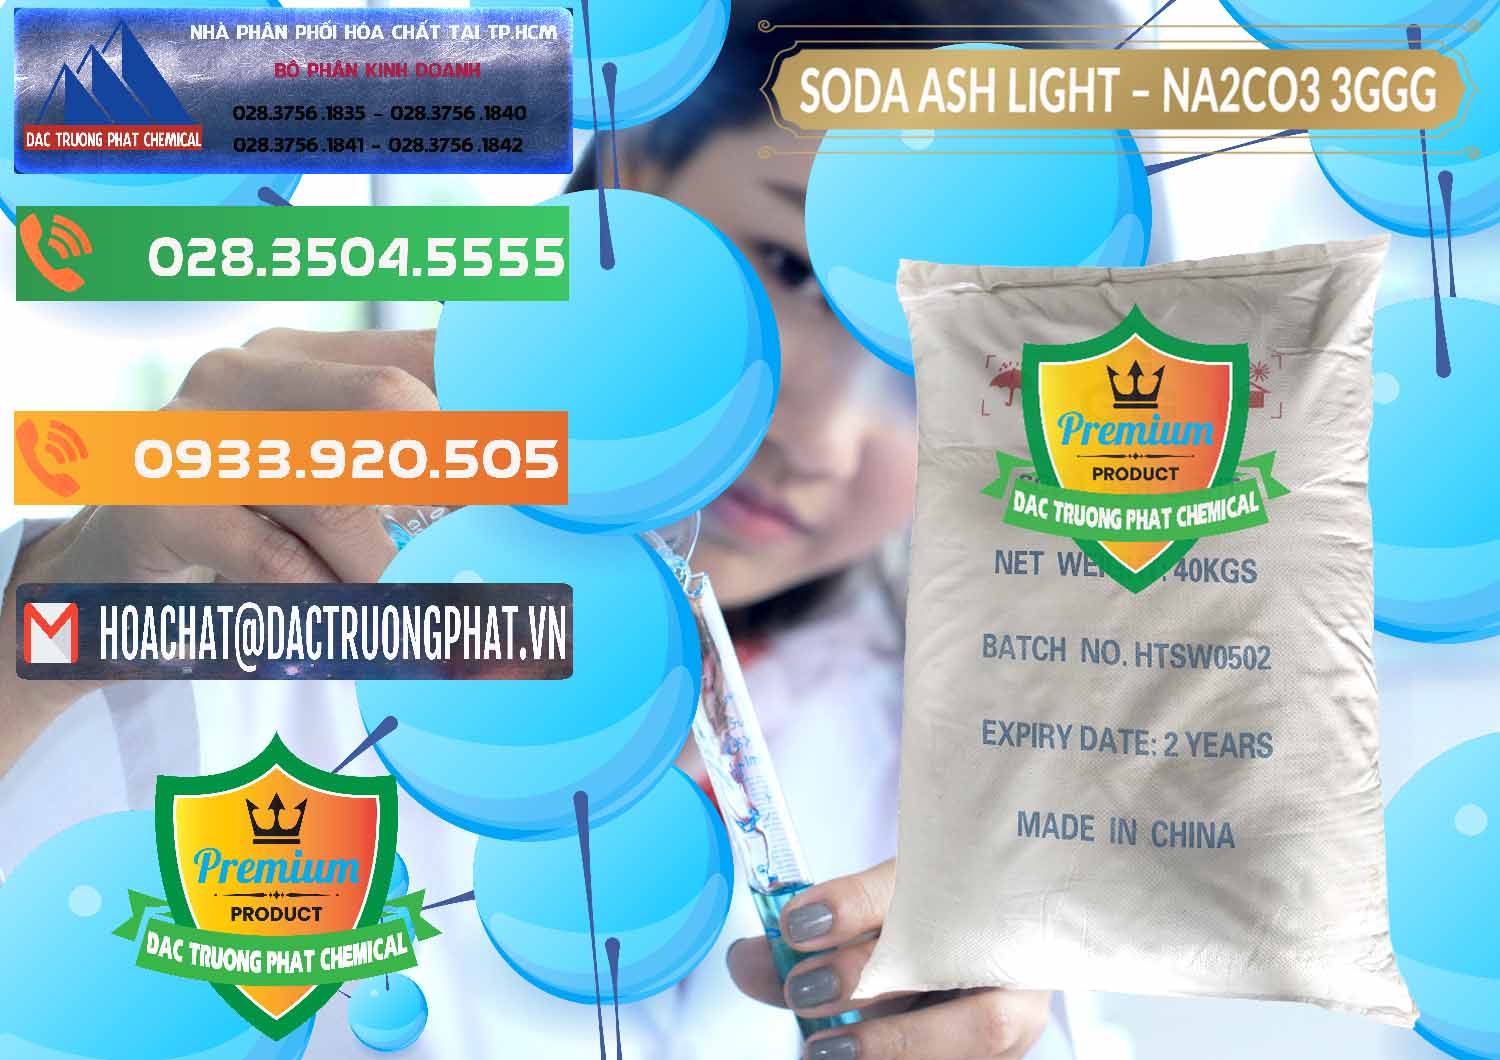 Đơn vị chuyên bán - cung cấp Soda Ash Light - NA2CO3 3GGG Trung Quốc China - 0124 - Bán & cung cấp hóa chất tại TP.HCM - hoachatxulynuoc.com.vn